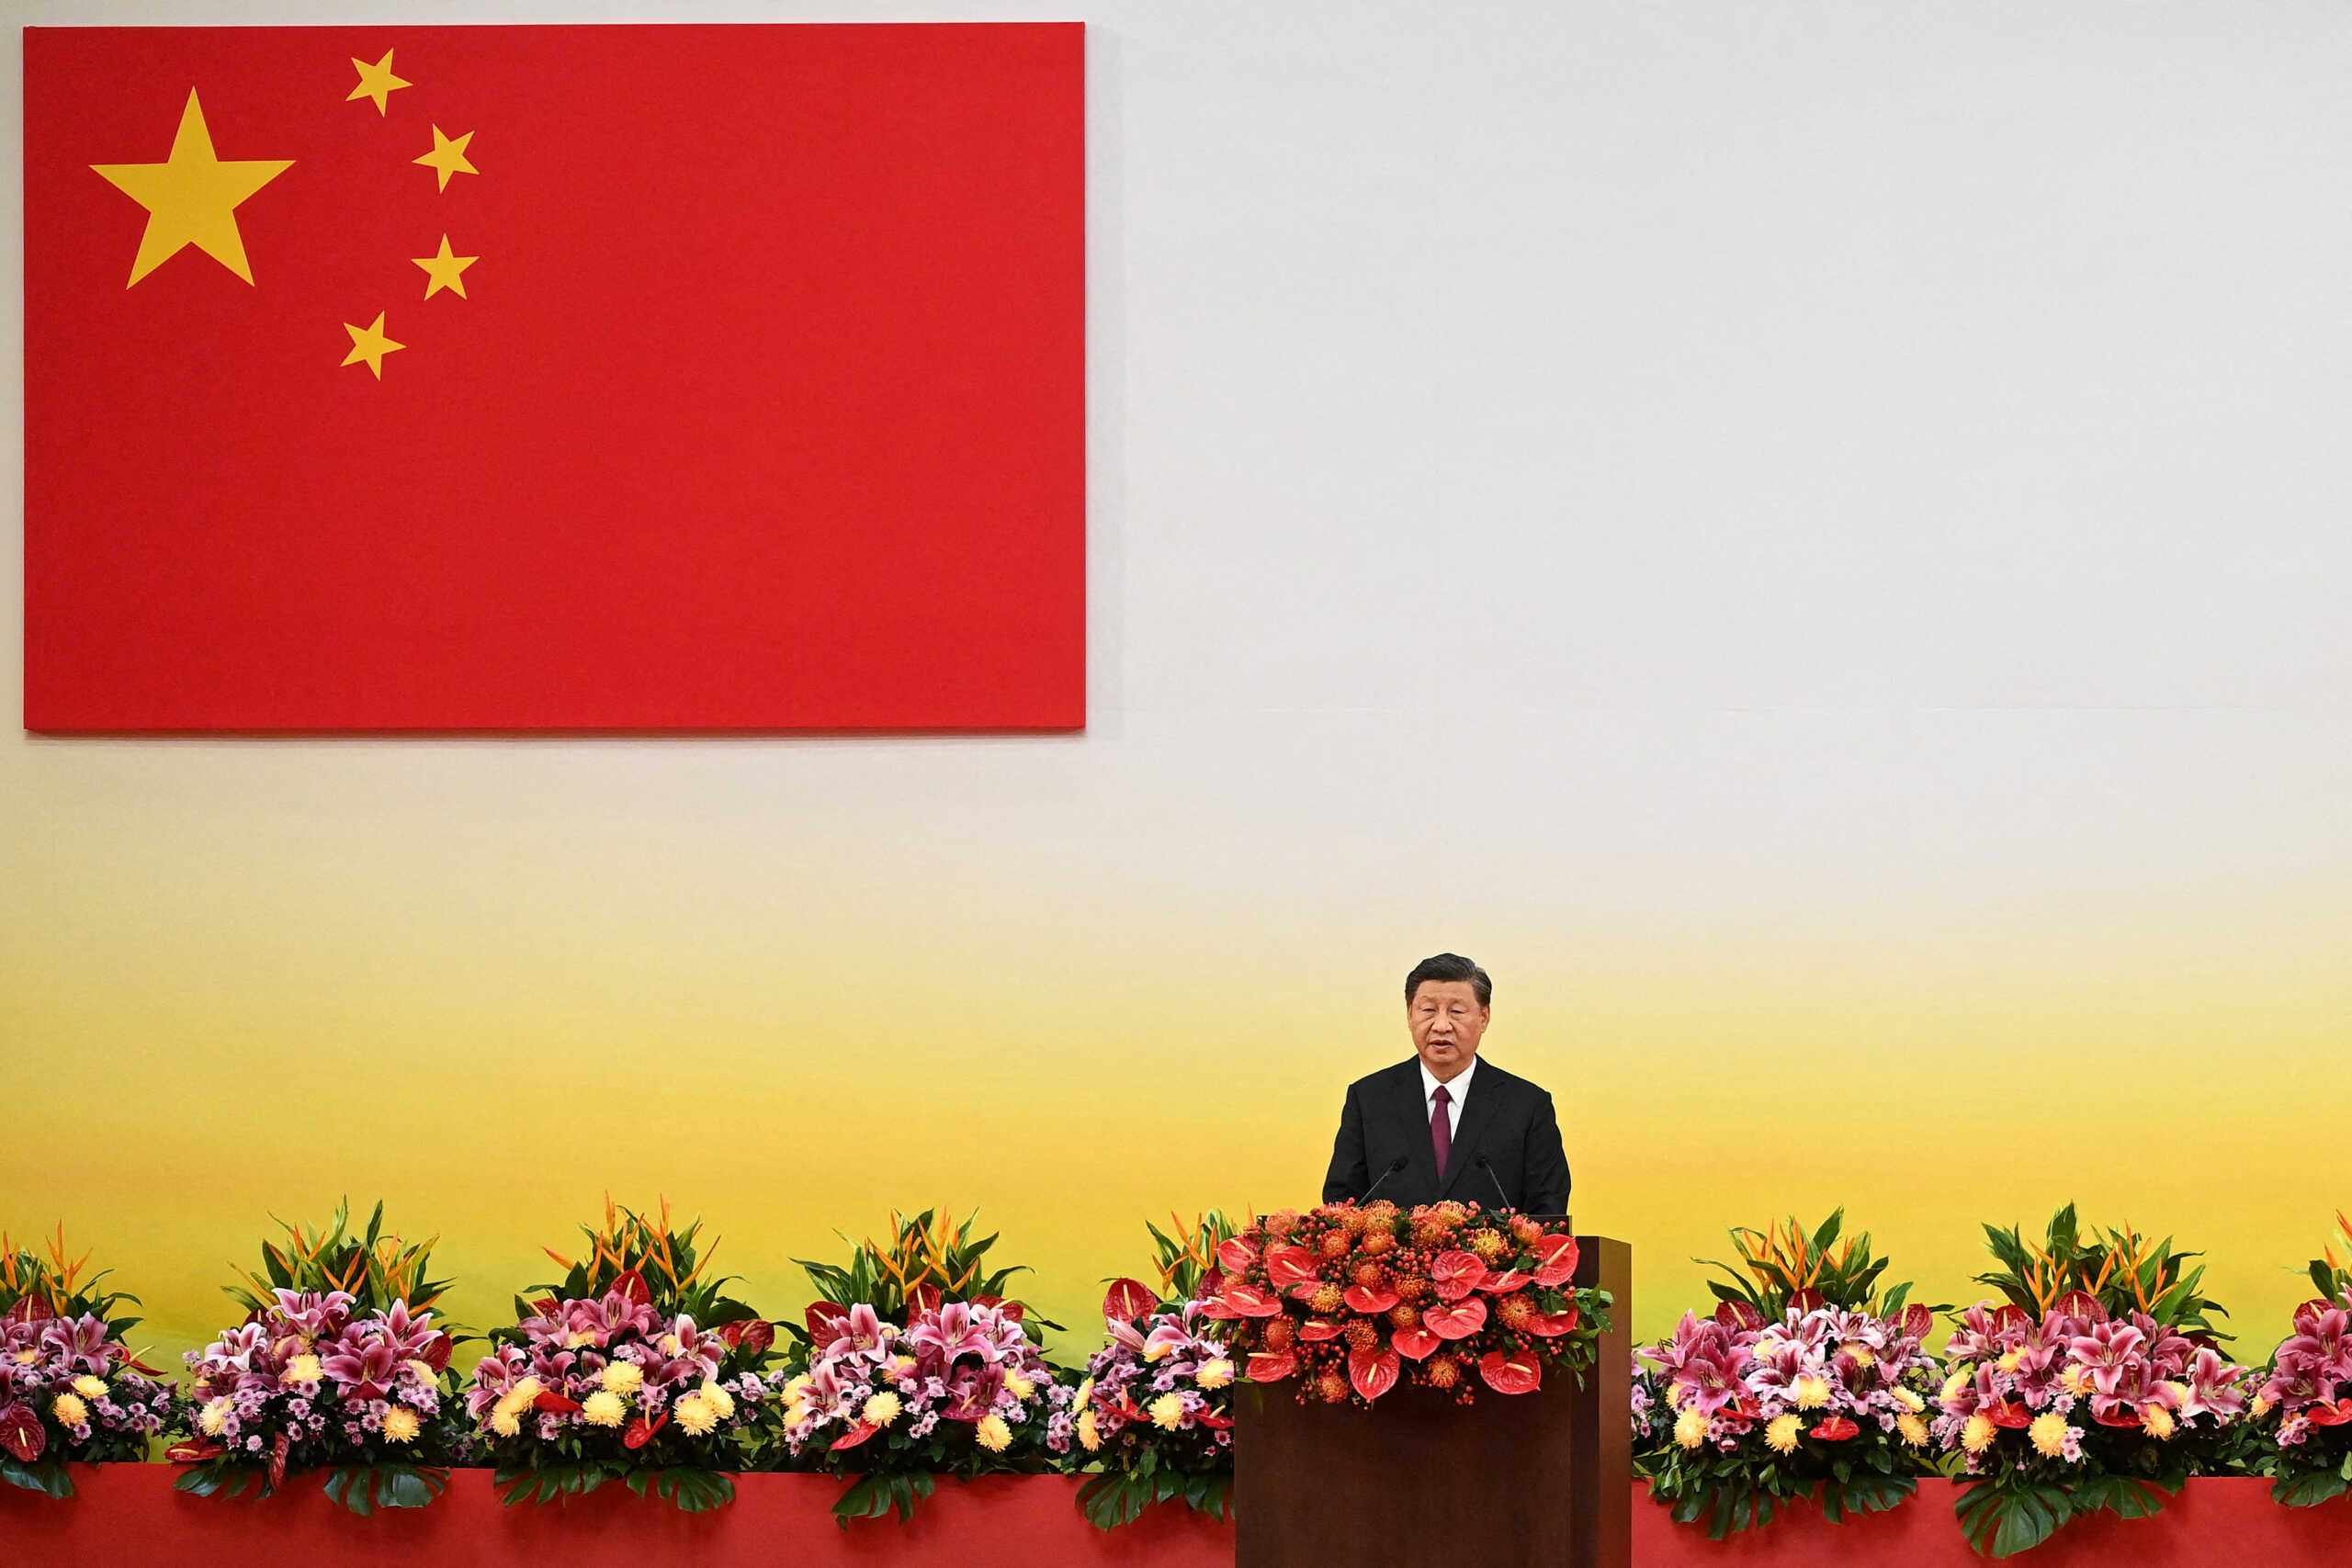 ΚΚ Κίνας: Στις 16 Οκτωβρίου ξεκινά το 20ό συνέδριό του – Βέβαιος γραμματέας ο Σι Τζινπίνγκ